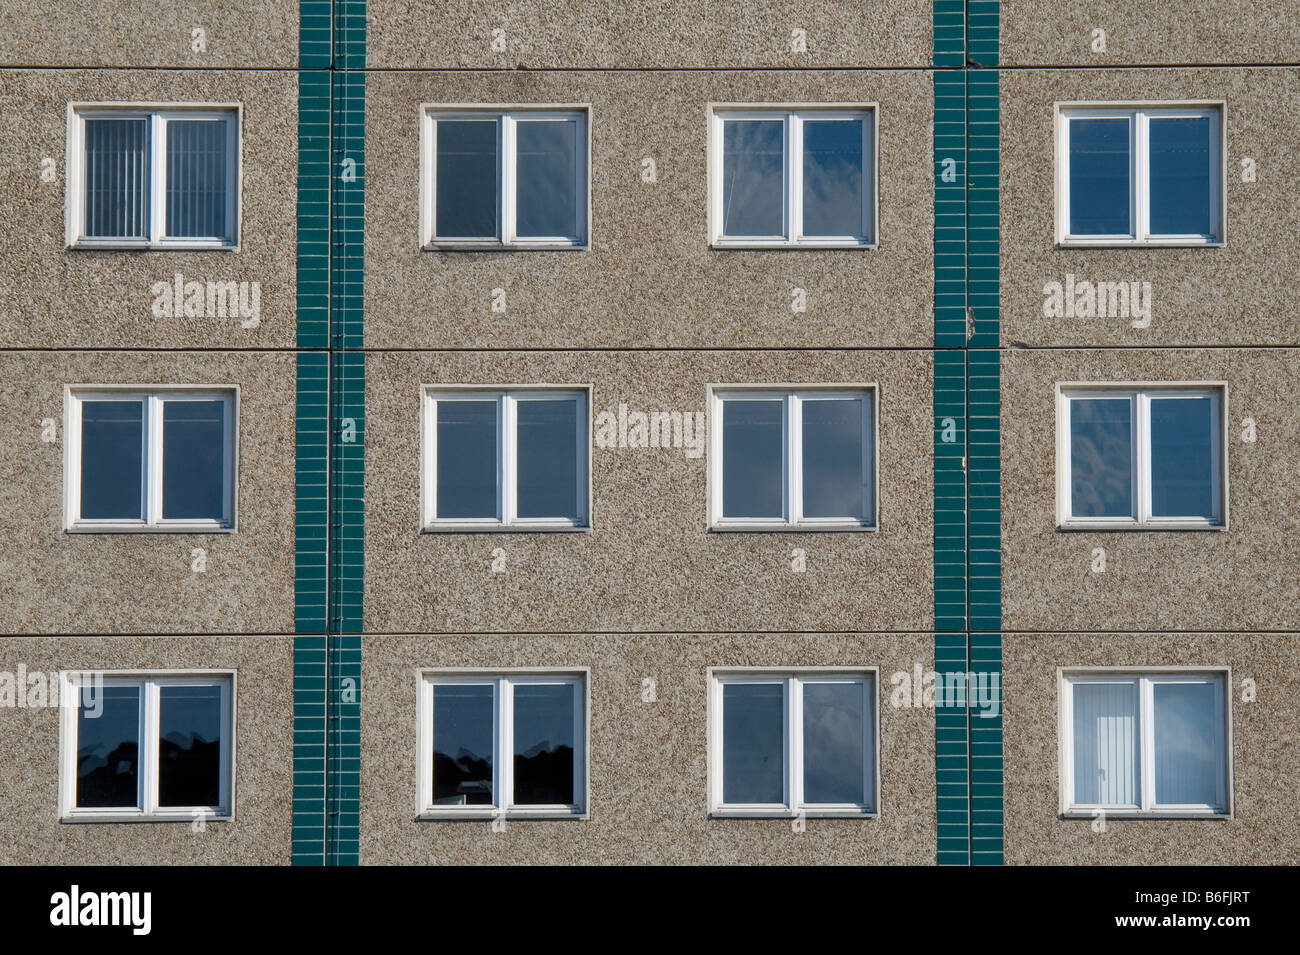 Plattenbau prefabricados de hormigón, construcción, Vista parcial, Berlín, Alemania, Europa Foto de stock